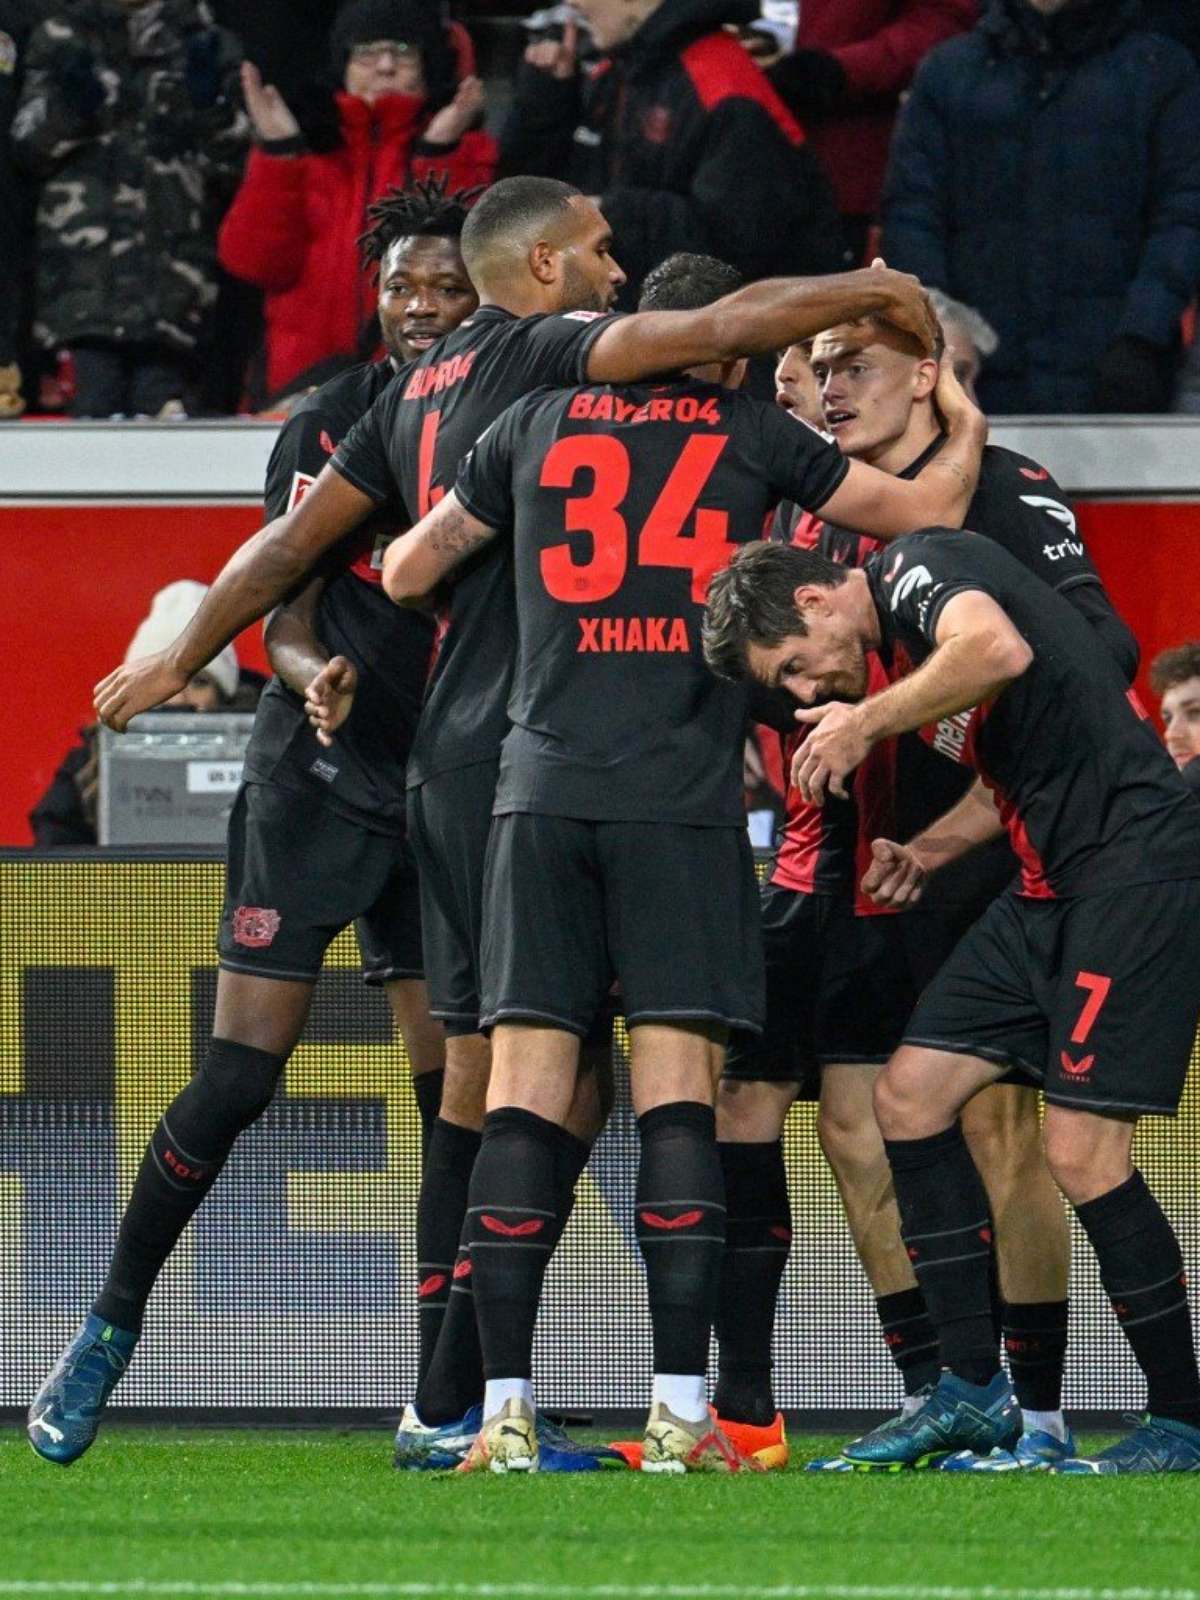 Bayern vence Freiburg com tranquilidade e segue caça à liderança